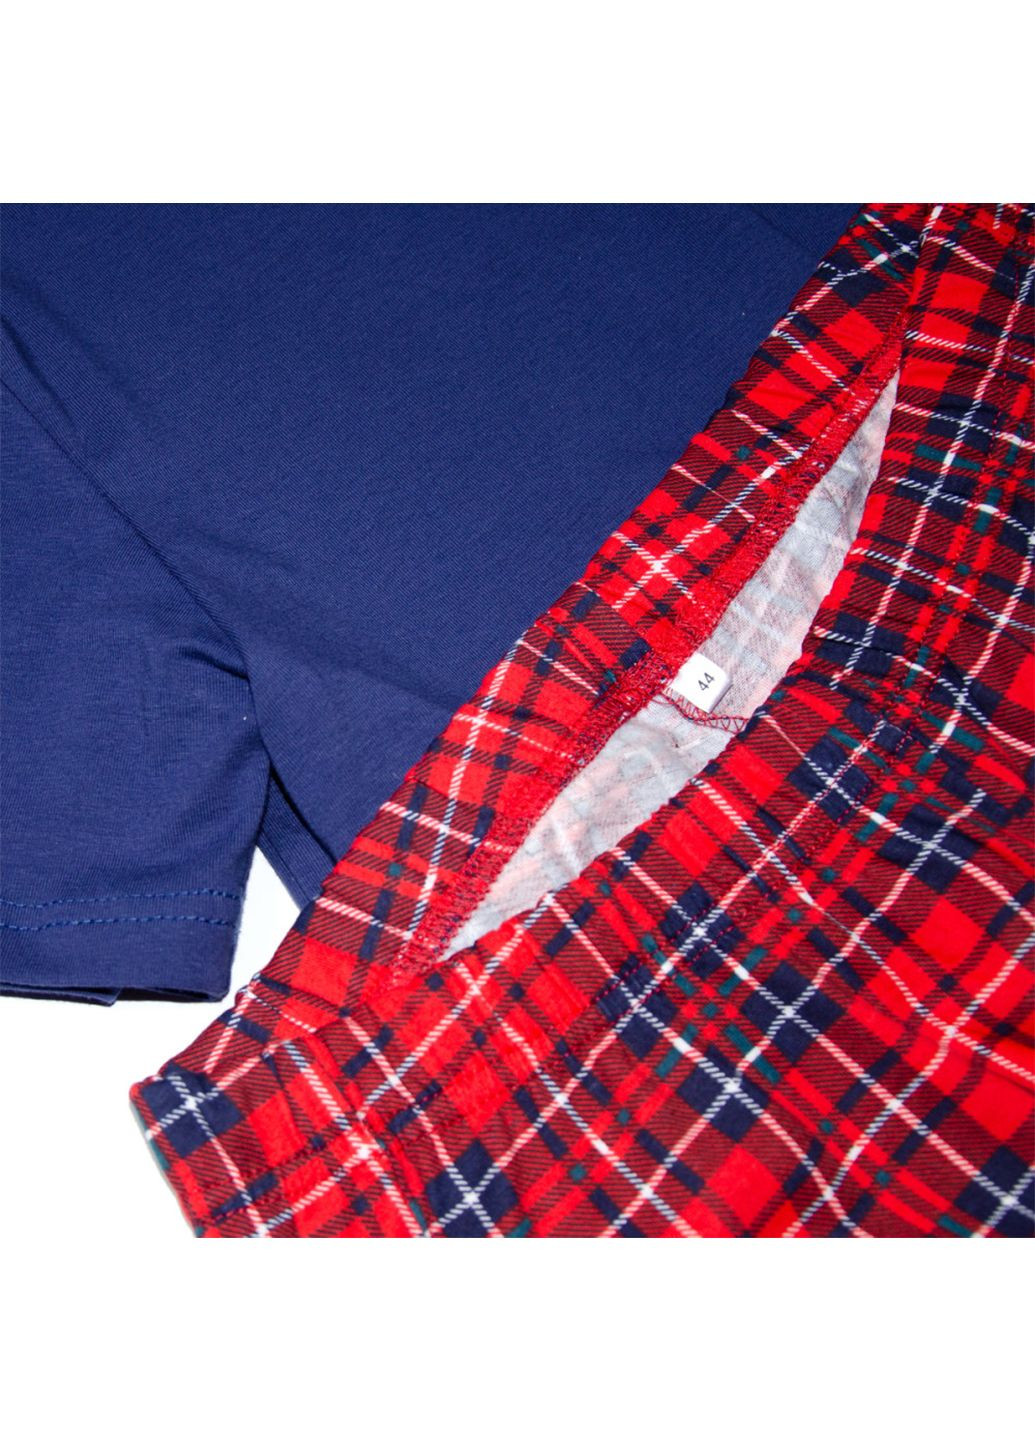 Комбинированная всесезон пижама м.ф-412 клеточка футболка + брюки Ярослав